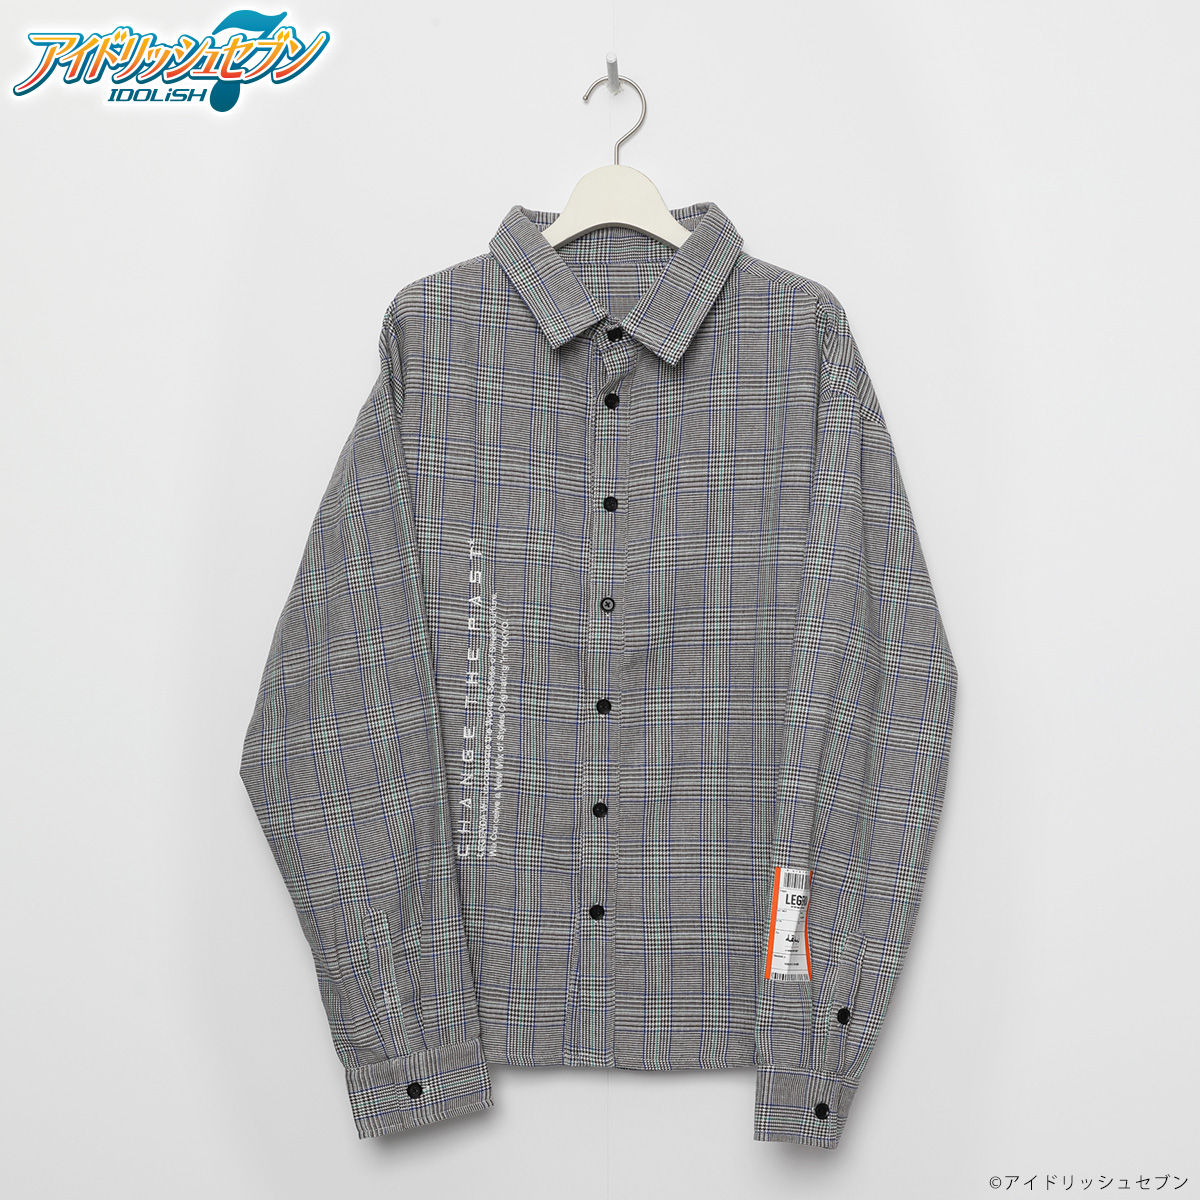 YAMATO NIKAIDO Over sized Check shirts